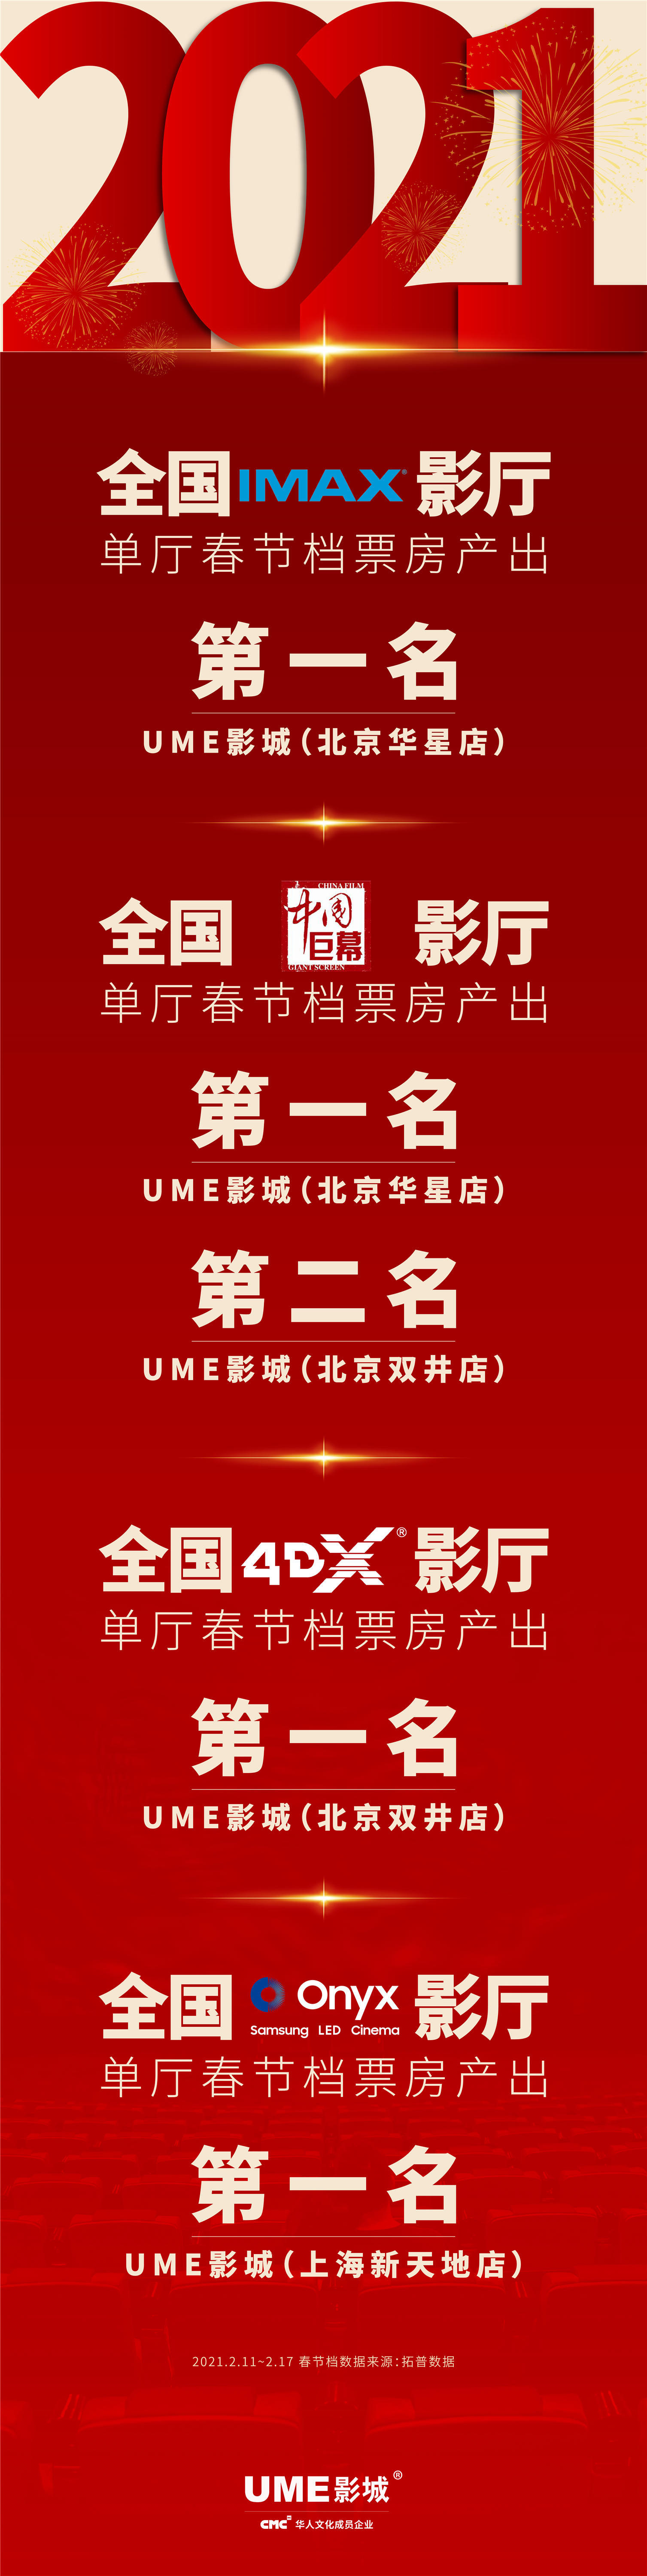 春节档全国票房破纪录，UME包揽IMAX、中国巨幕、4DX、Onyx单影厅票房冠军